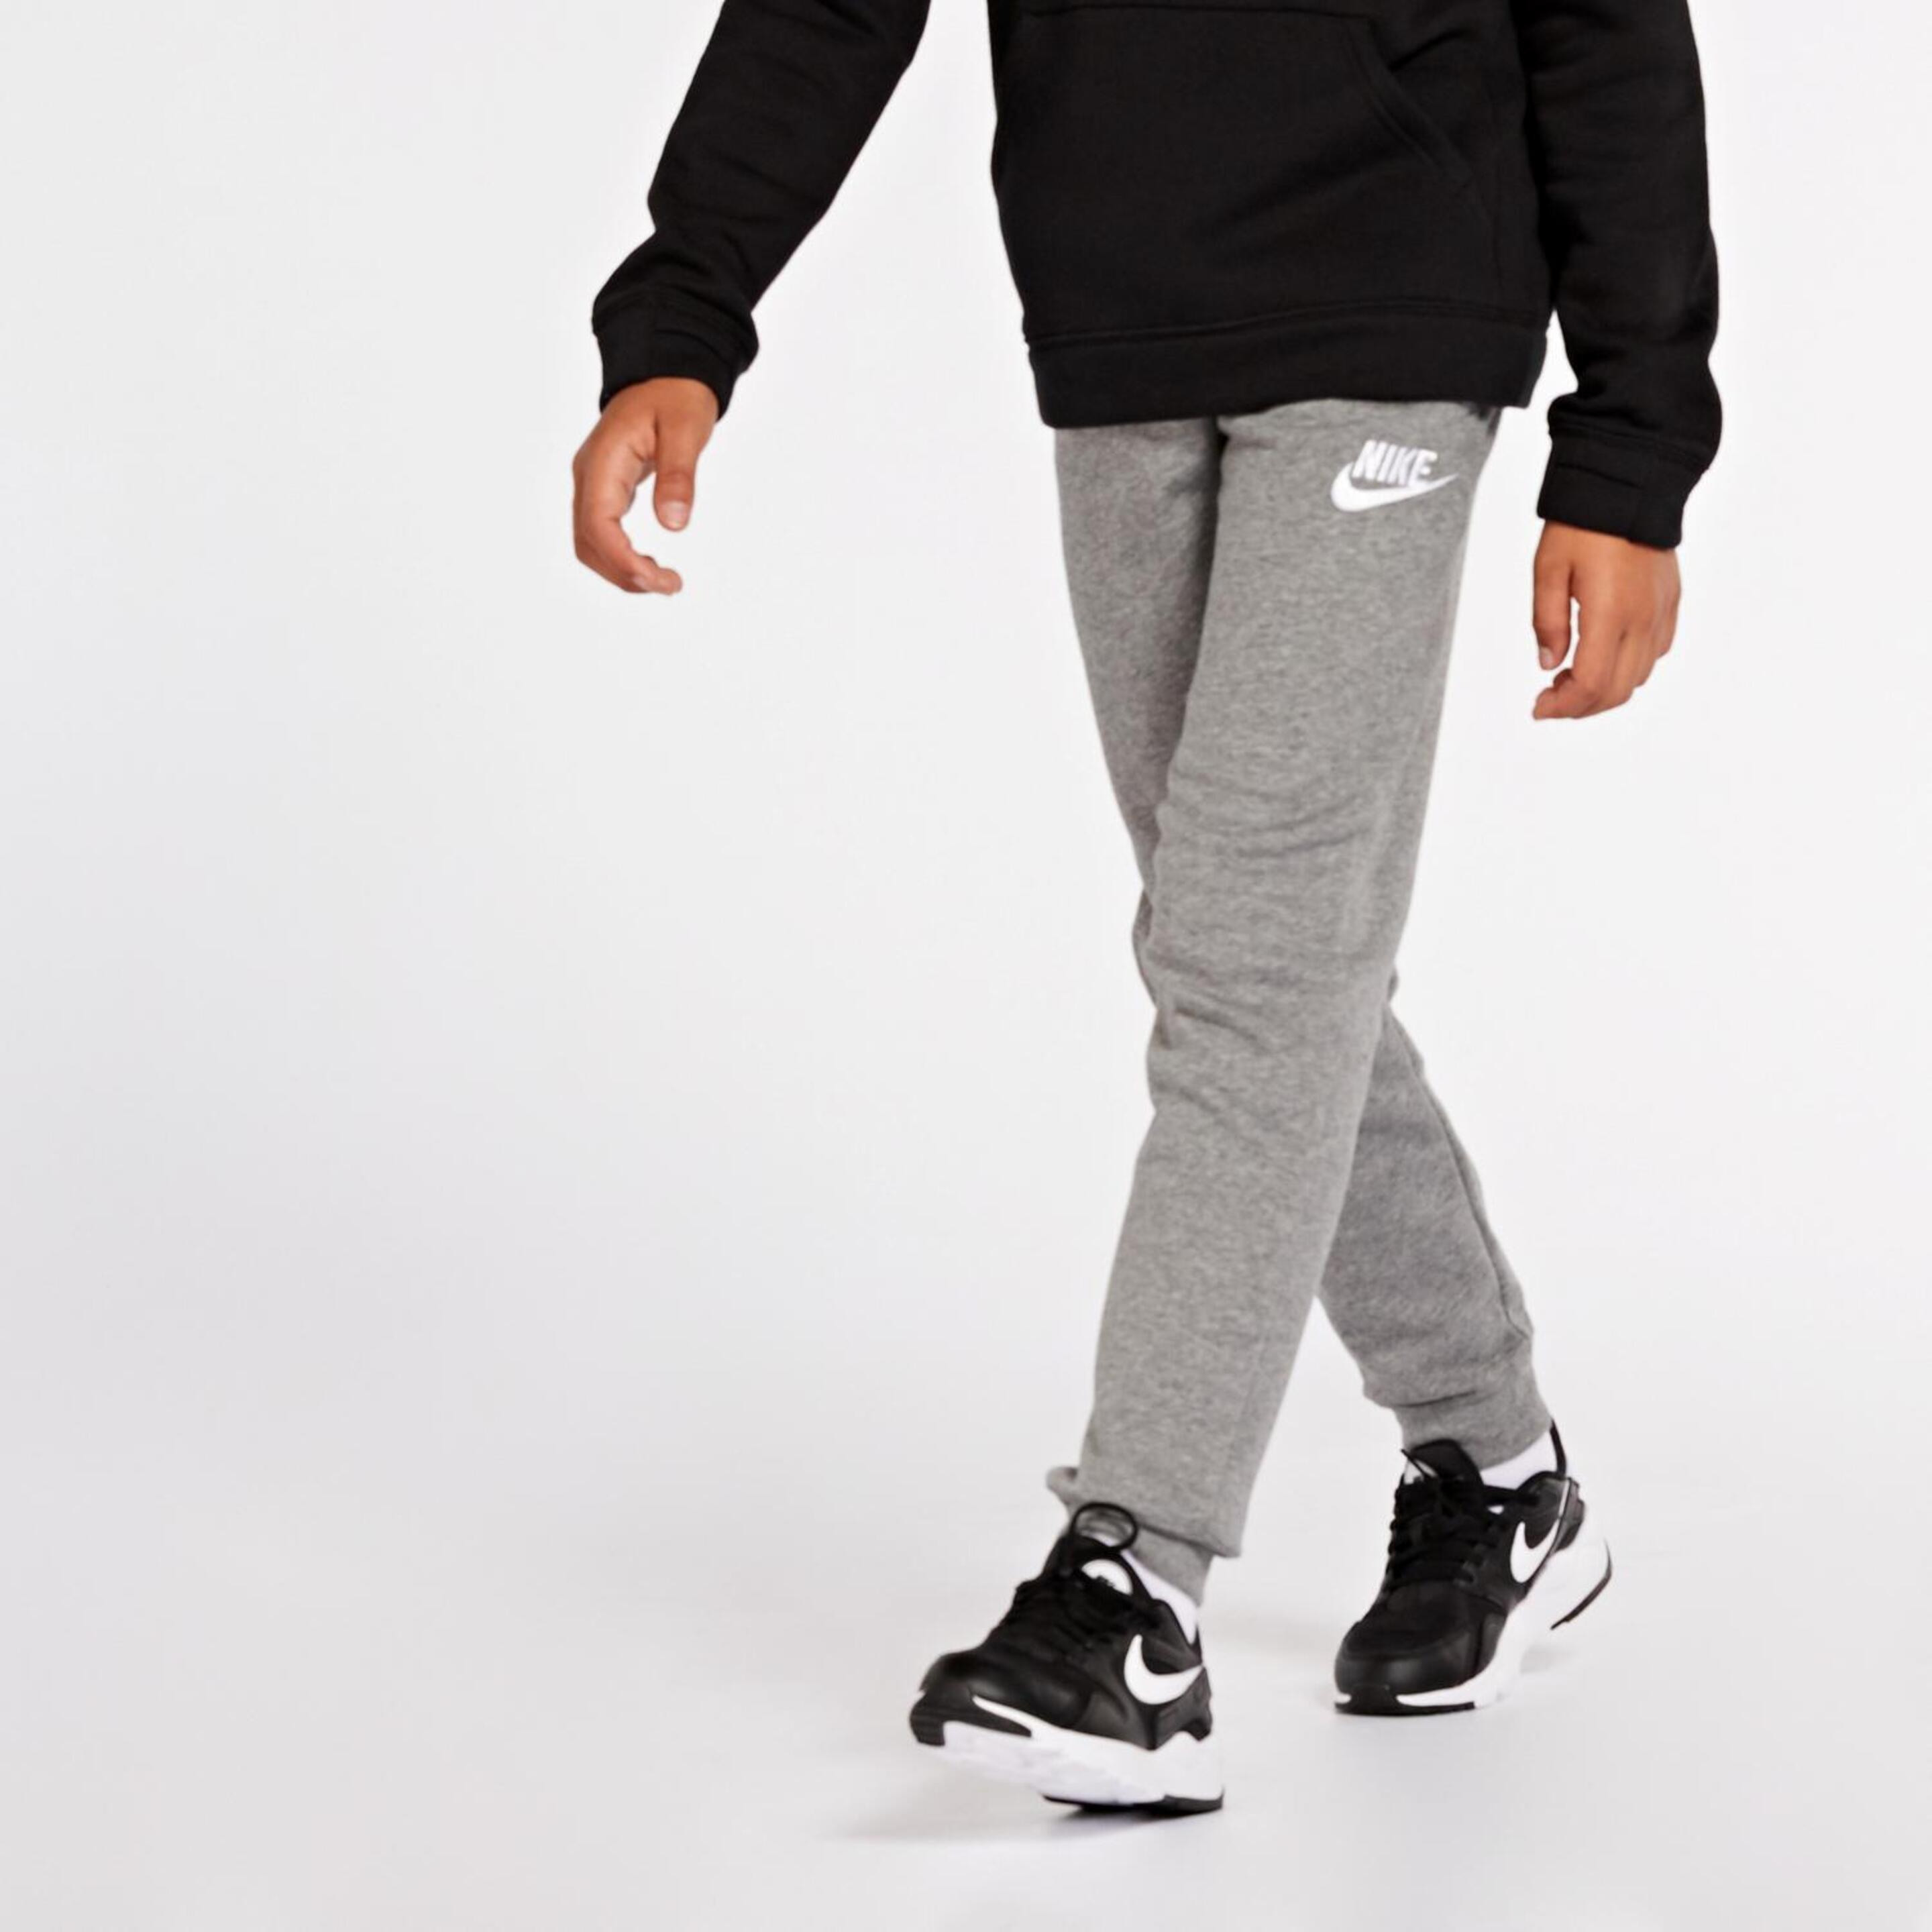 Calças Nike Core Plus - gris - Calças Punho Rapaz